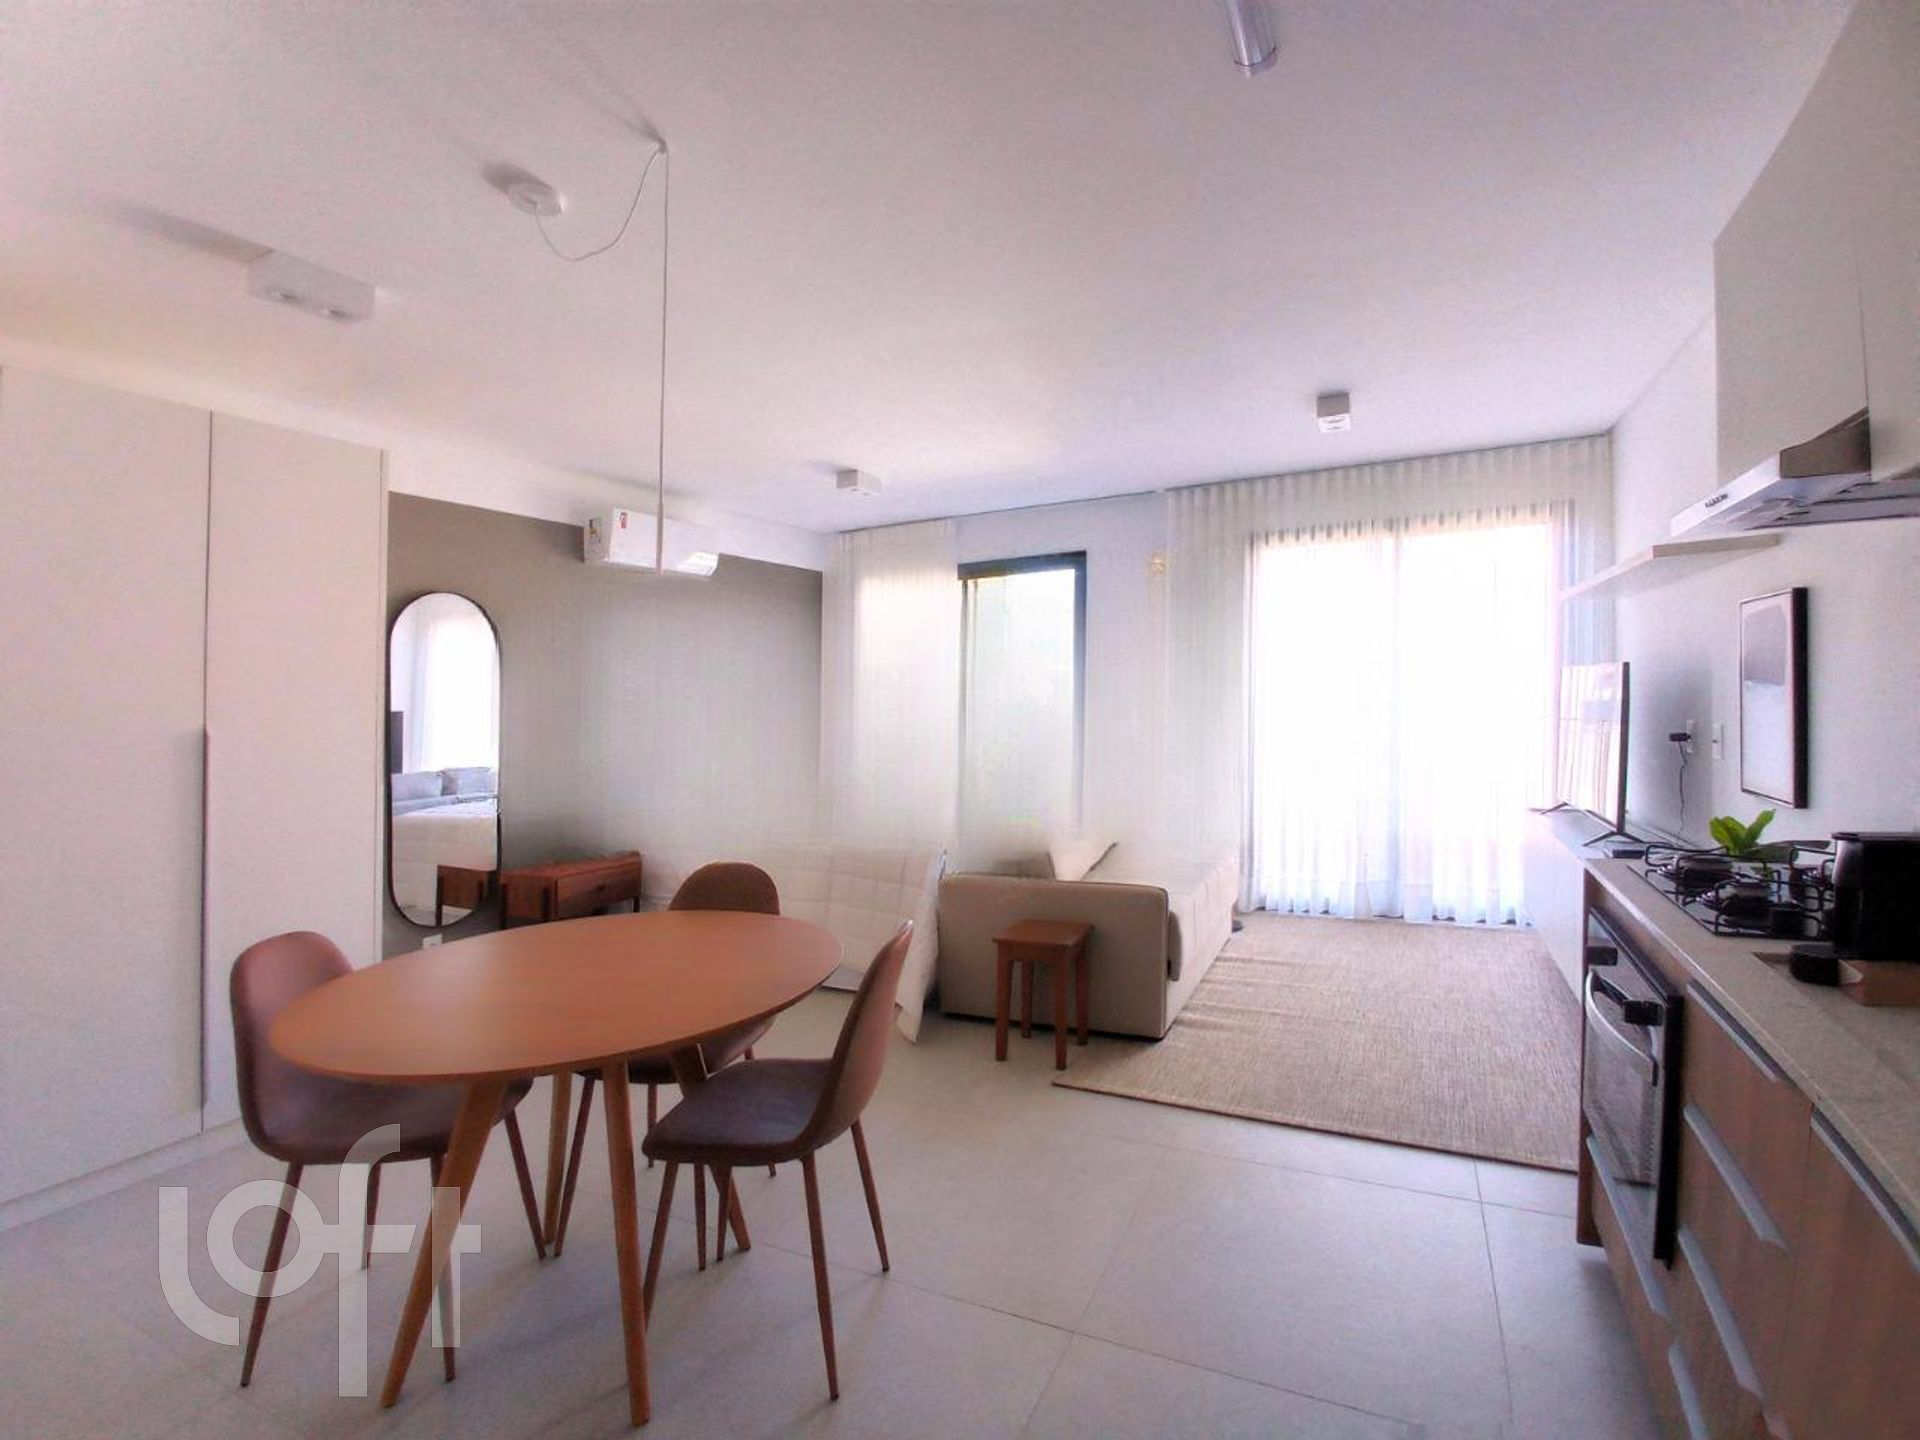 VENDA &#8211; Apartamento de 1 quarto no bairro João Paulo, Florianópolis &#8211; PUsse1ca